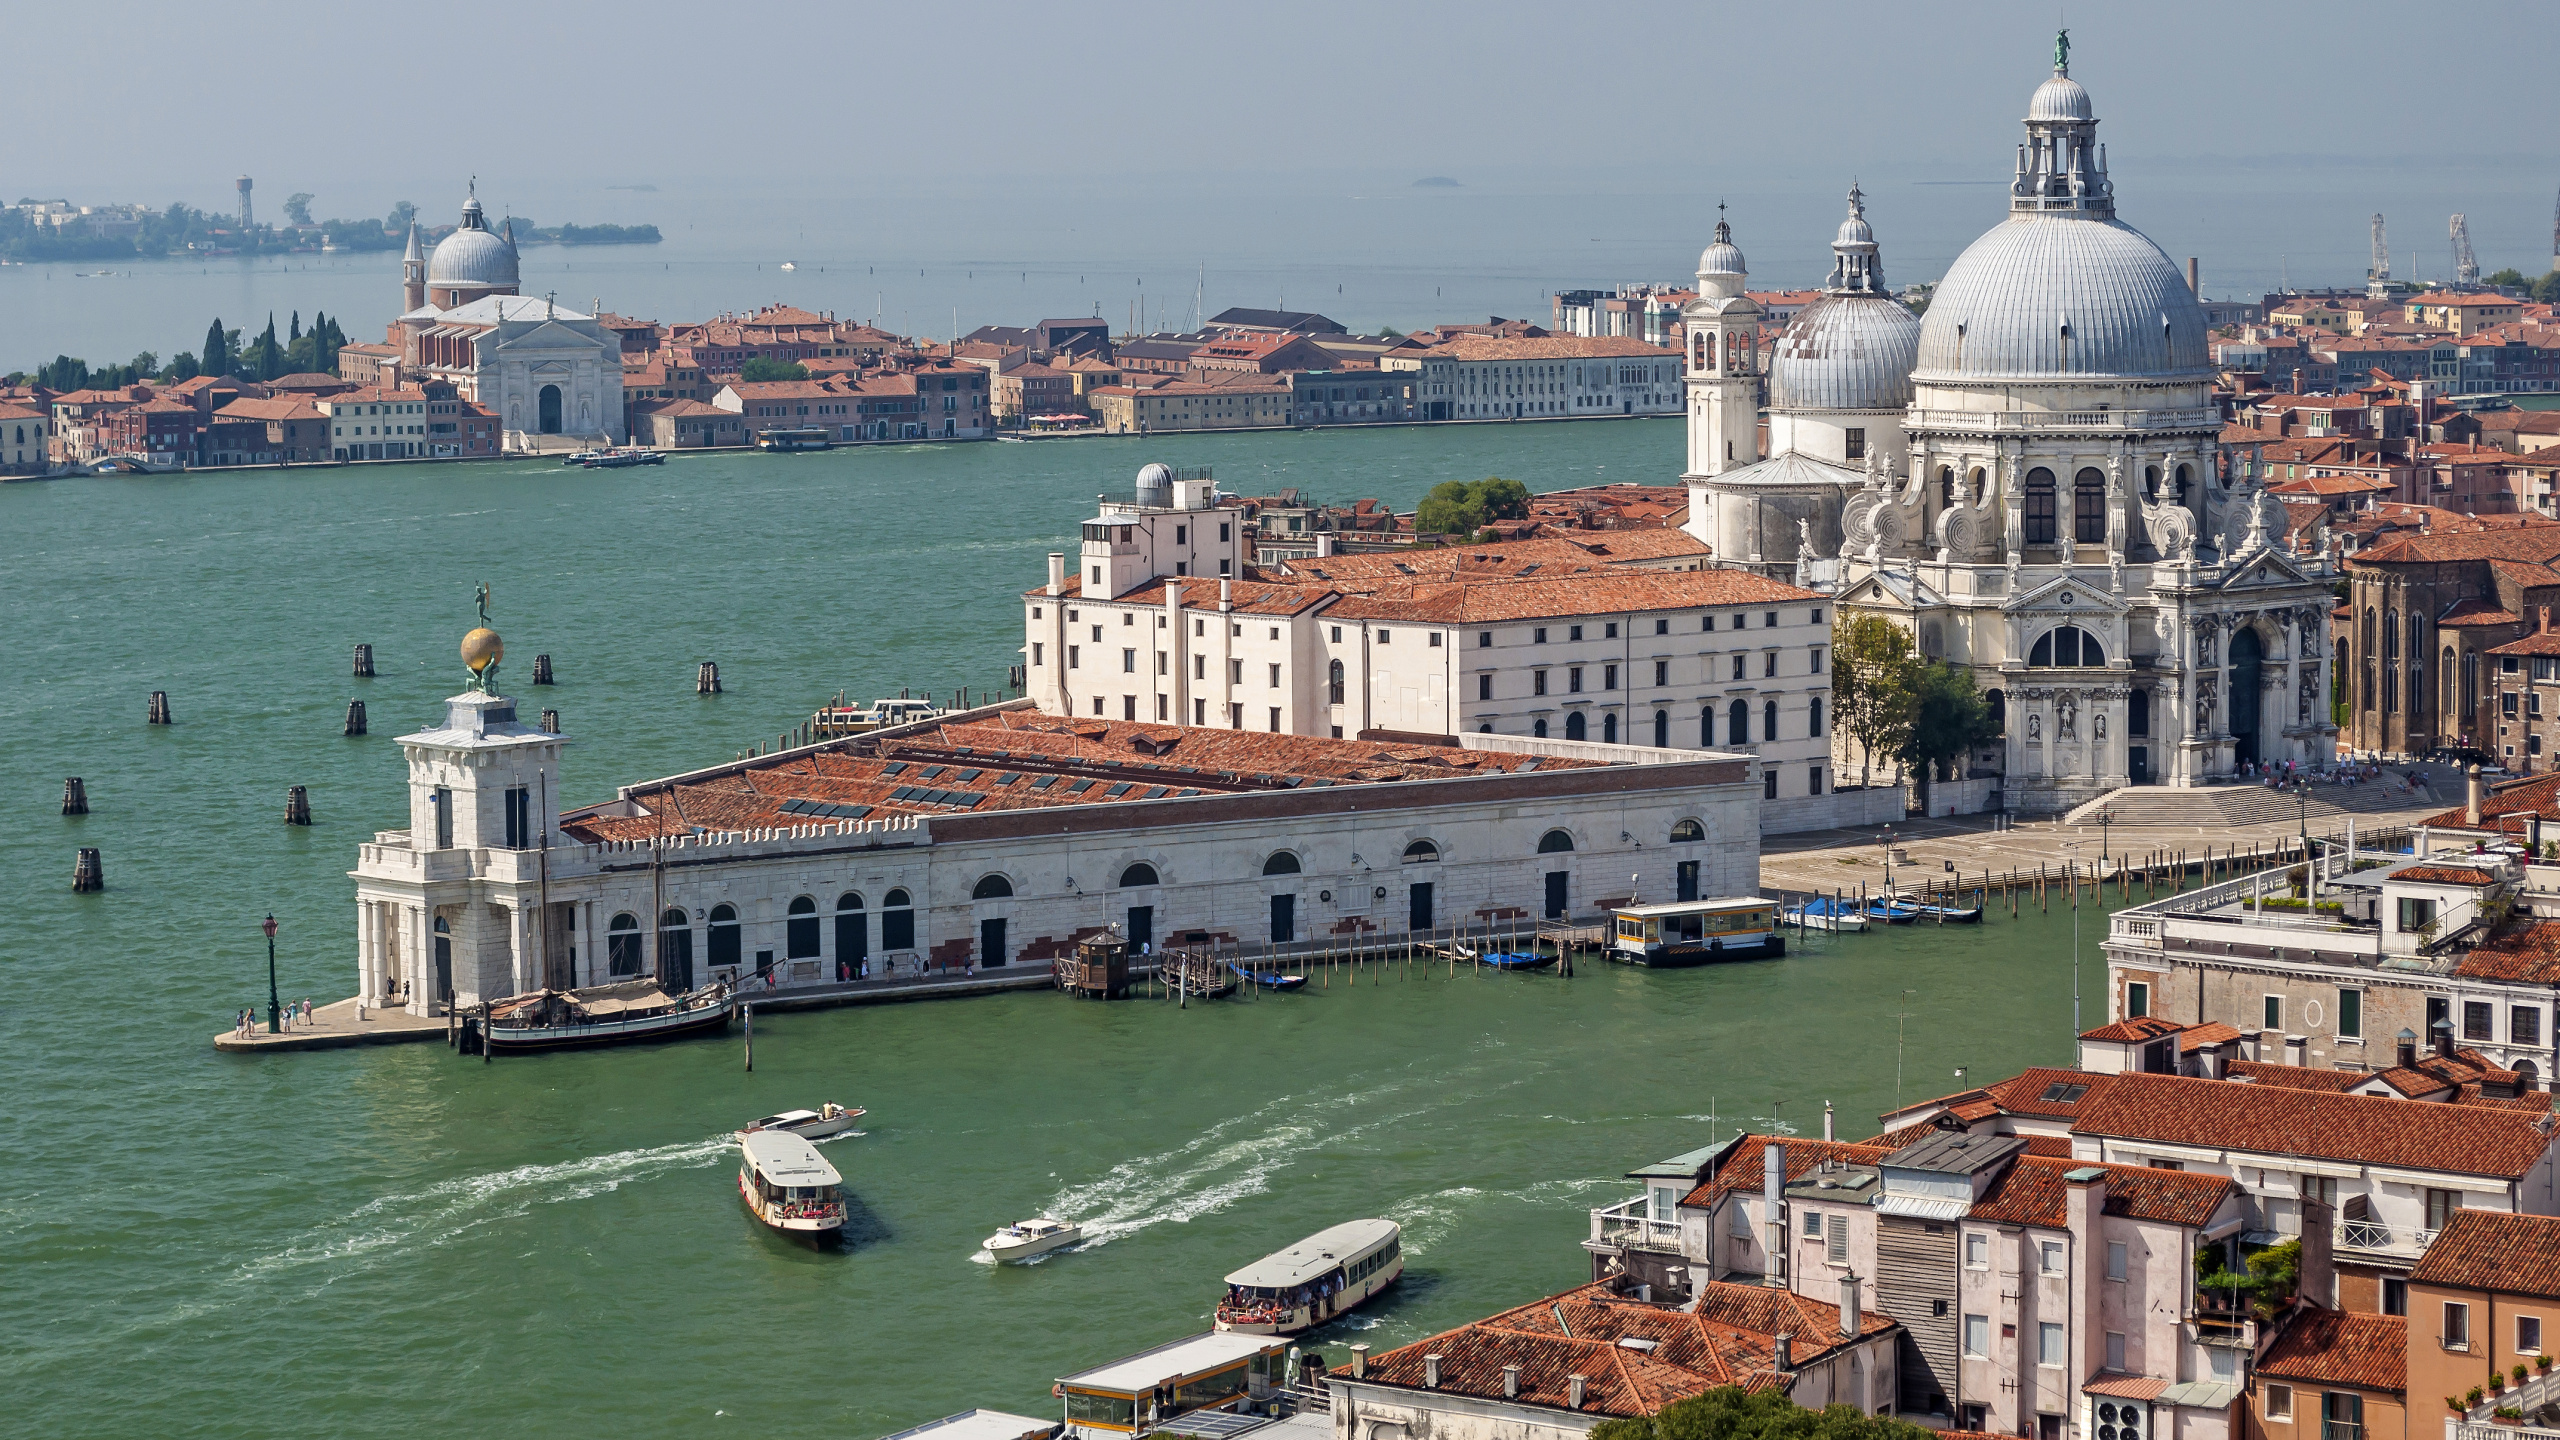 威尼斯, 大运河, 里程碑, 城市, 城市景观 壁纸 2560x1440 允许